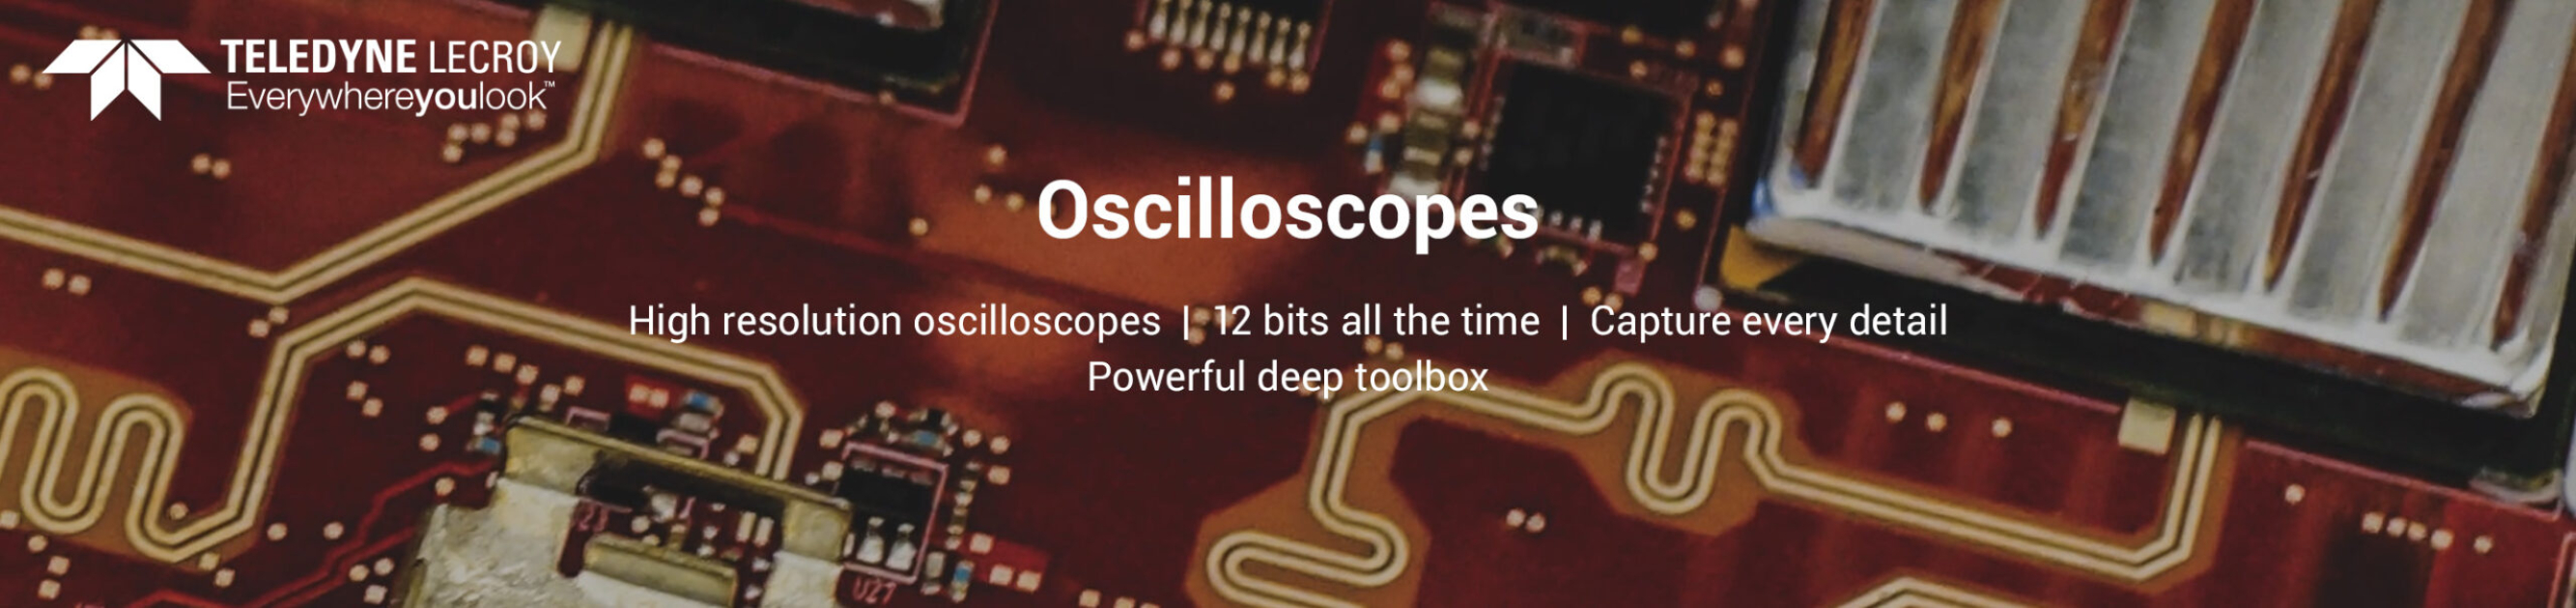 Teledyne LeCroy Oscilloscopes